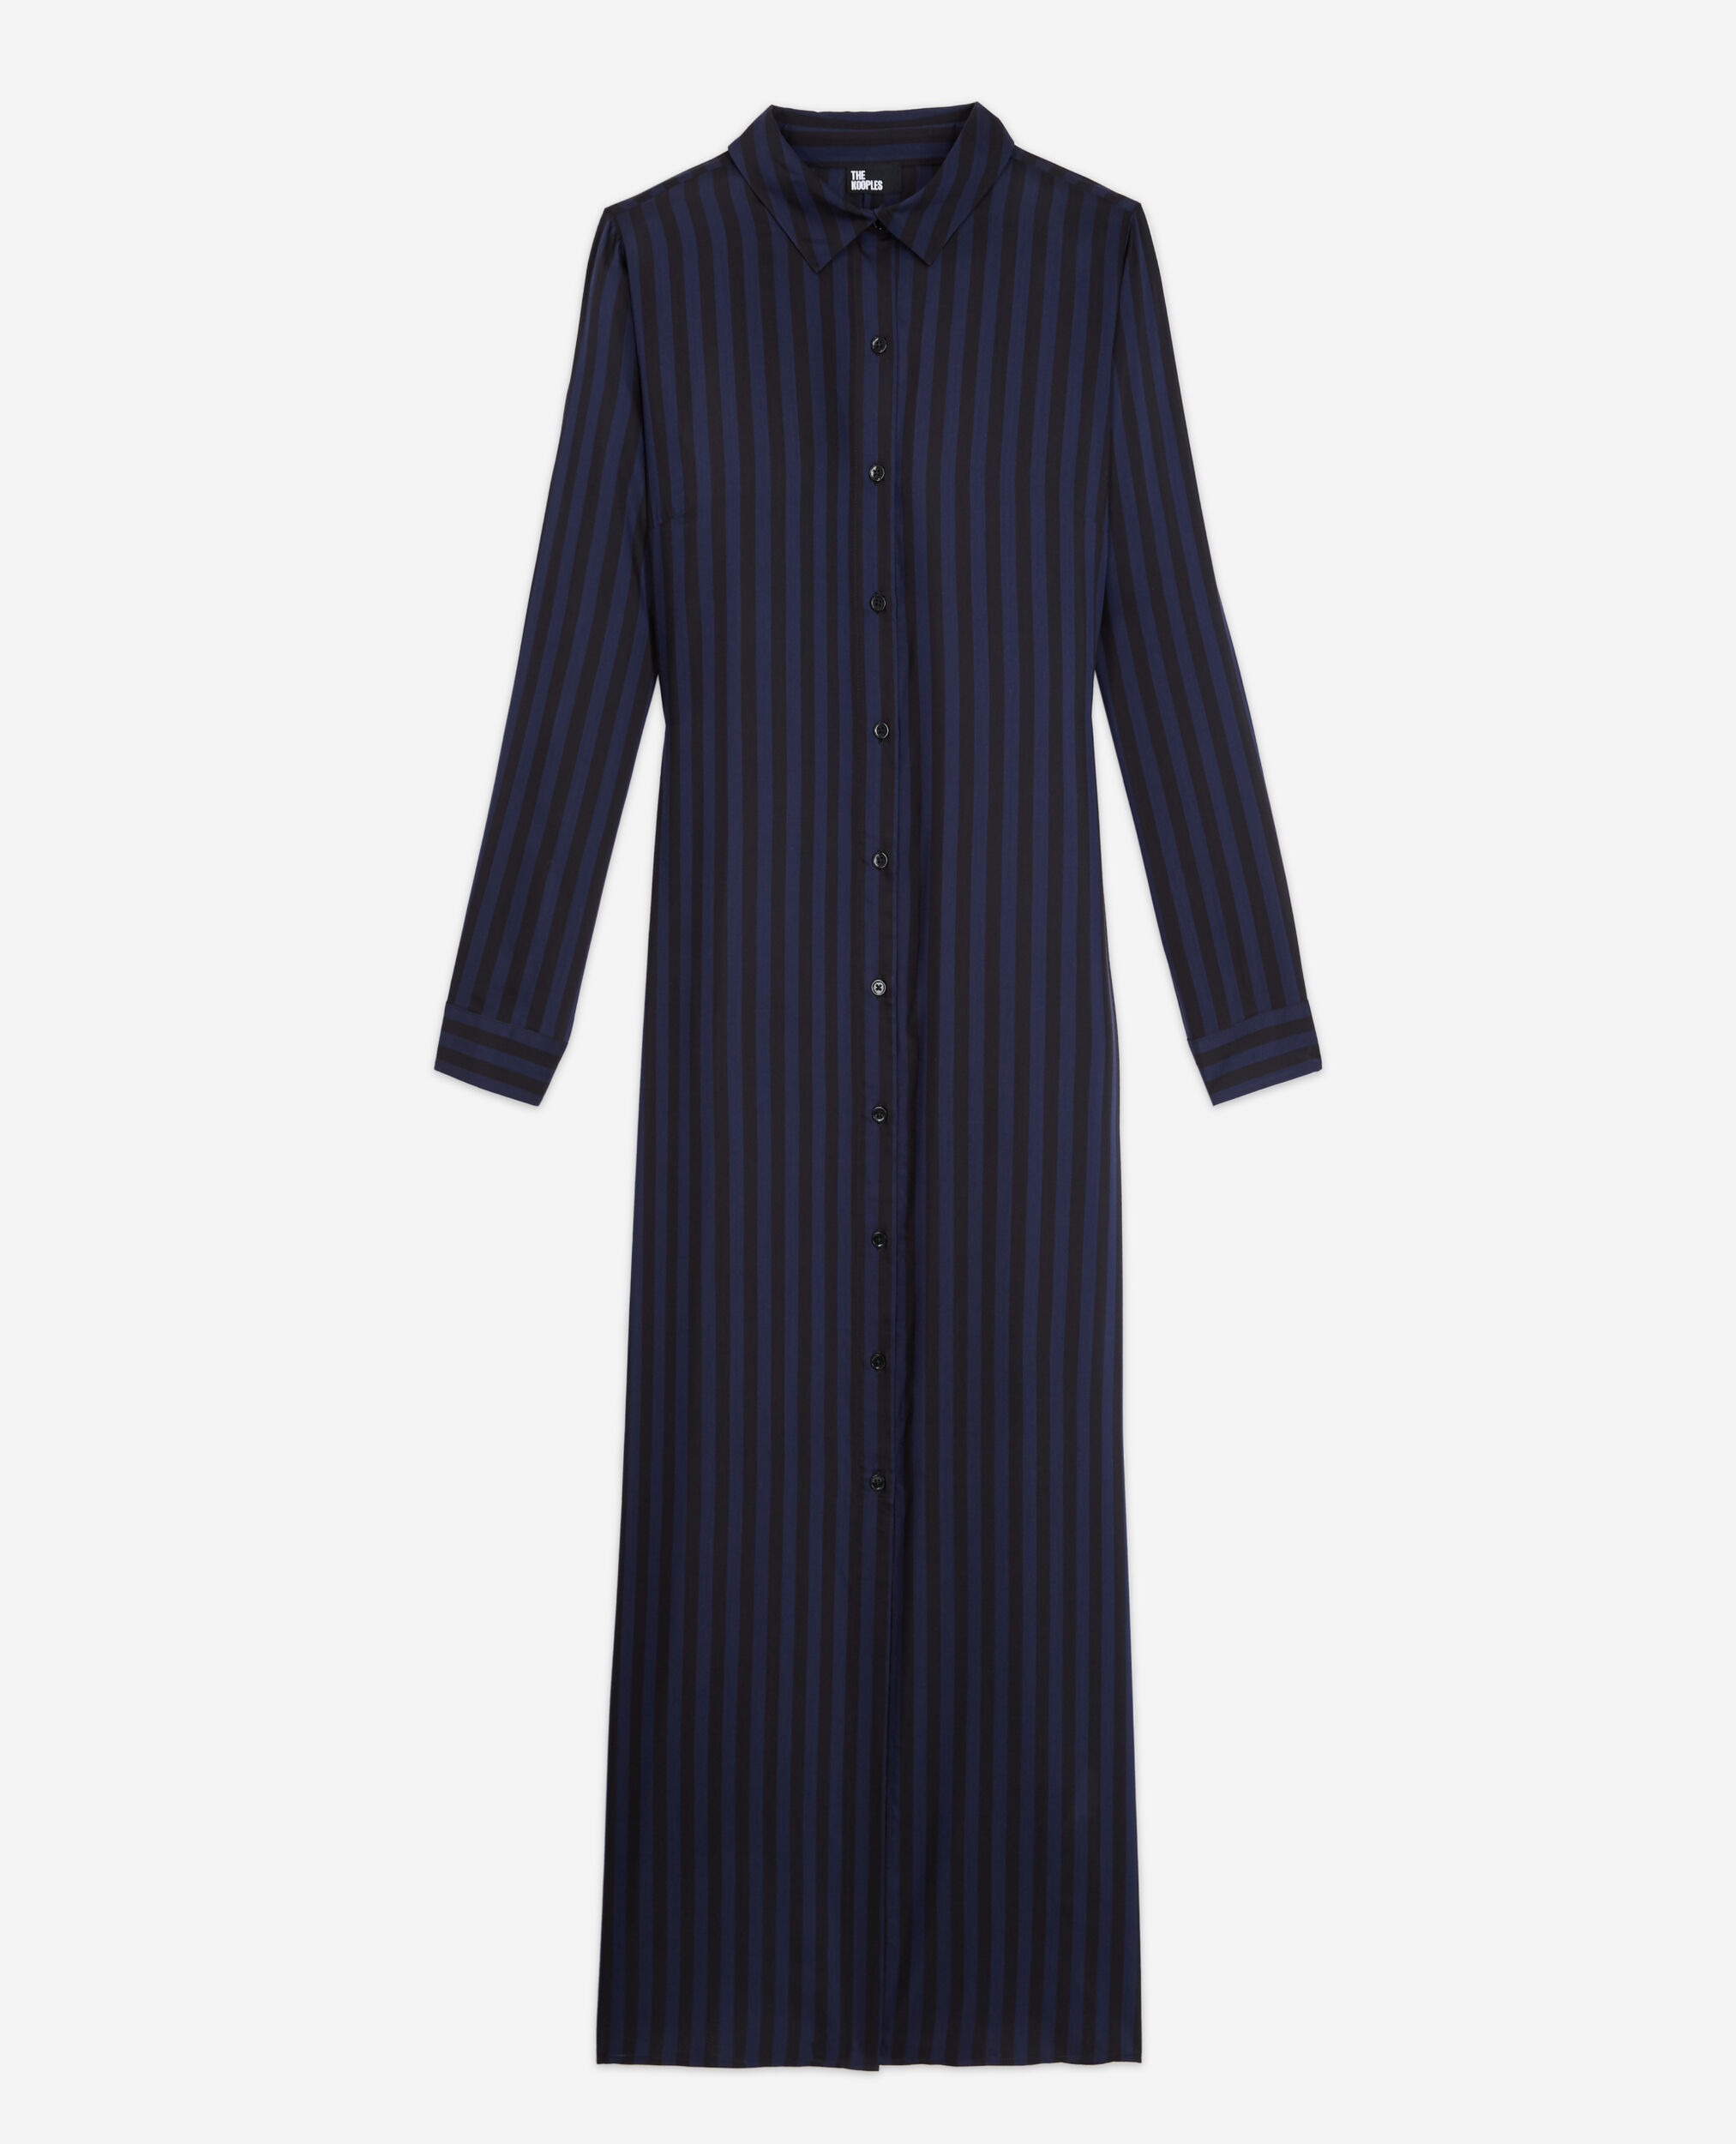 Long striped dress, BLACK NAVY, hi-res image number null